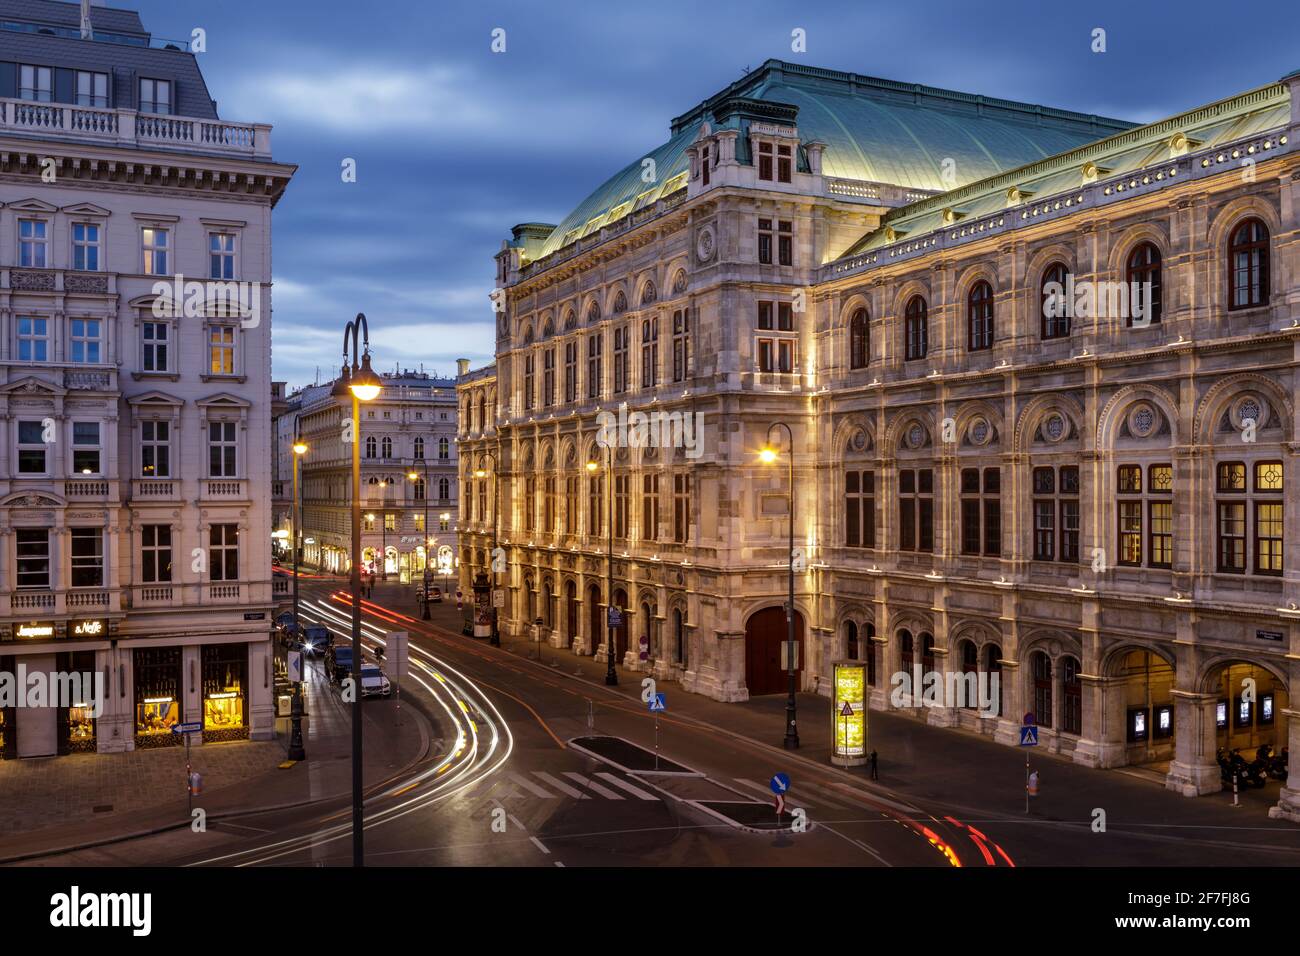 L'Opéra d'Etat de Vienne dans le centre de Vienne, Autriche, Europe Banque D'Images